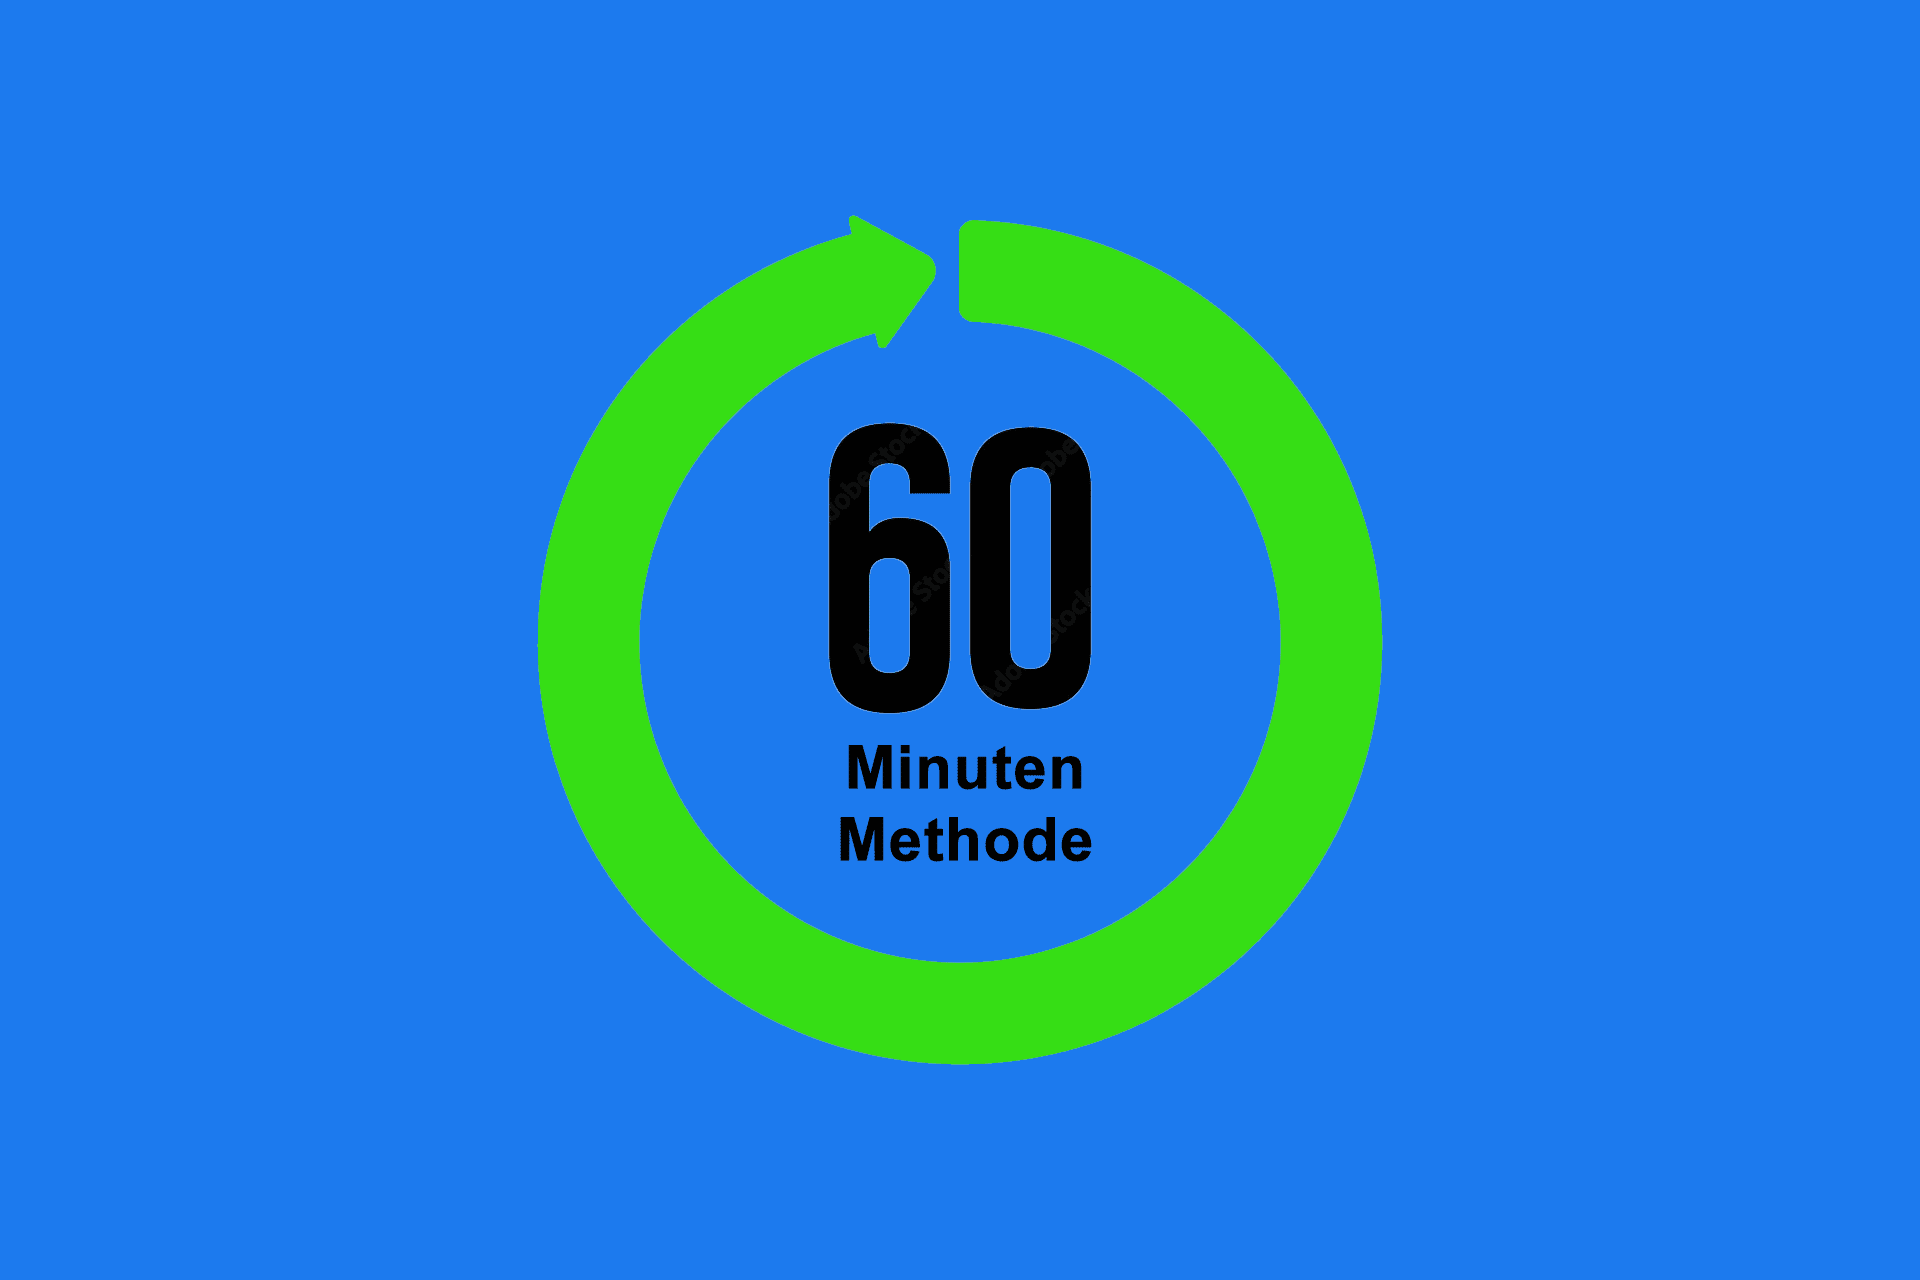 60-Minuten-Methode - jeden Tag für 60 Minuten dediziert Zeit für eine Aufgabe verwenden